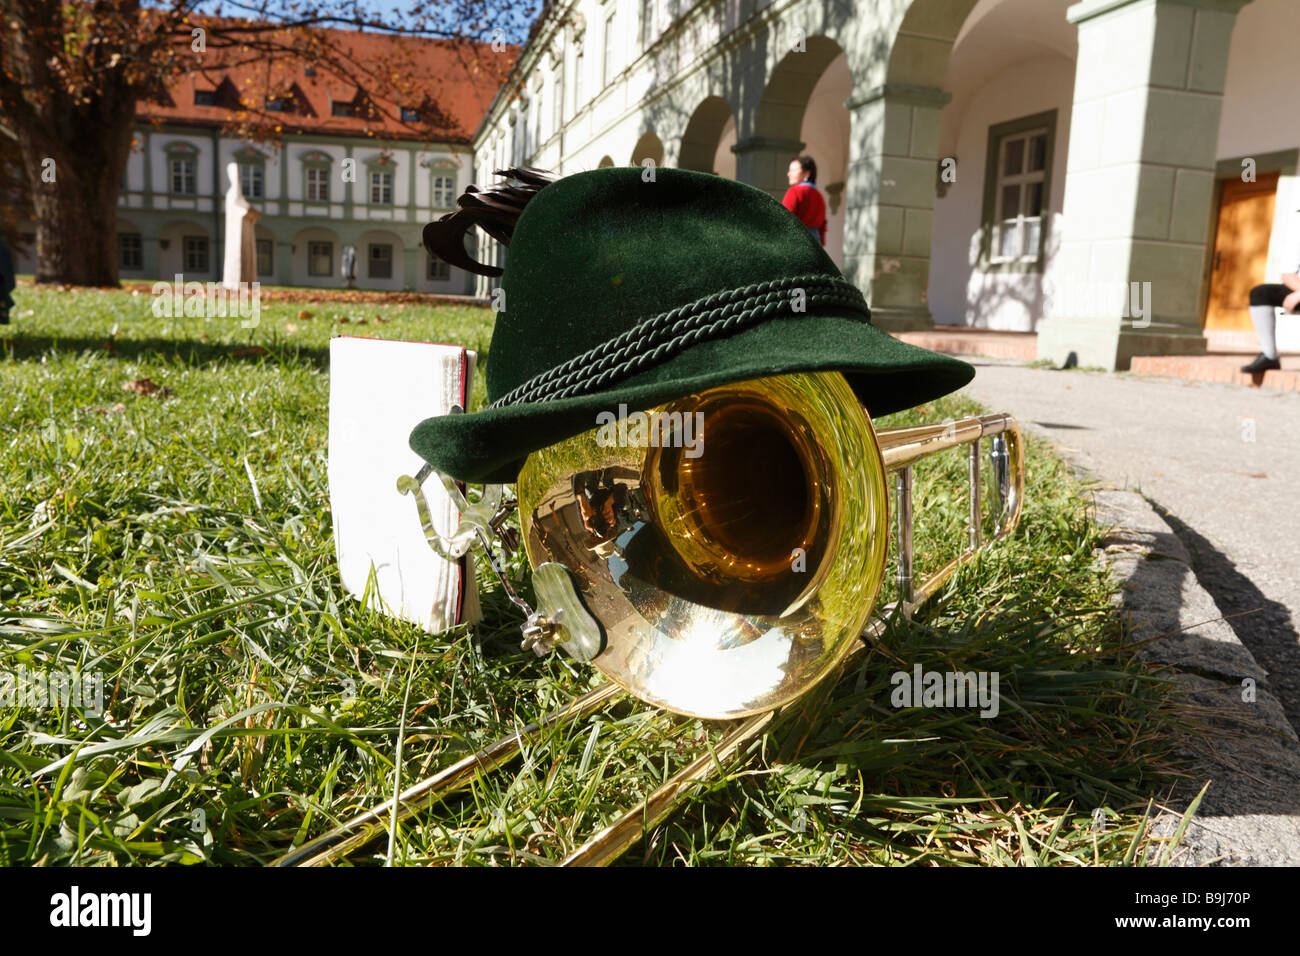 Chapeau traditionnel bavarois sur un trombone, Monastère Benediktbeuren, Upper Bavaria, Germany, Europe Banque D'Images